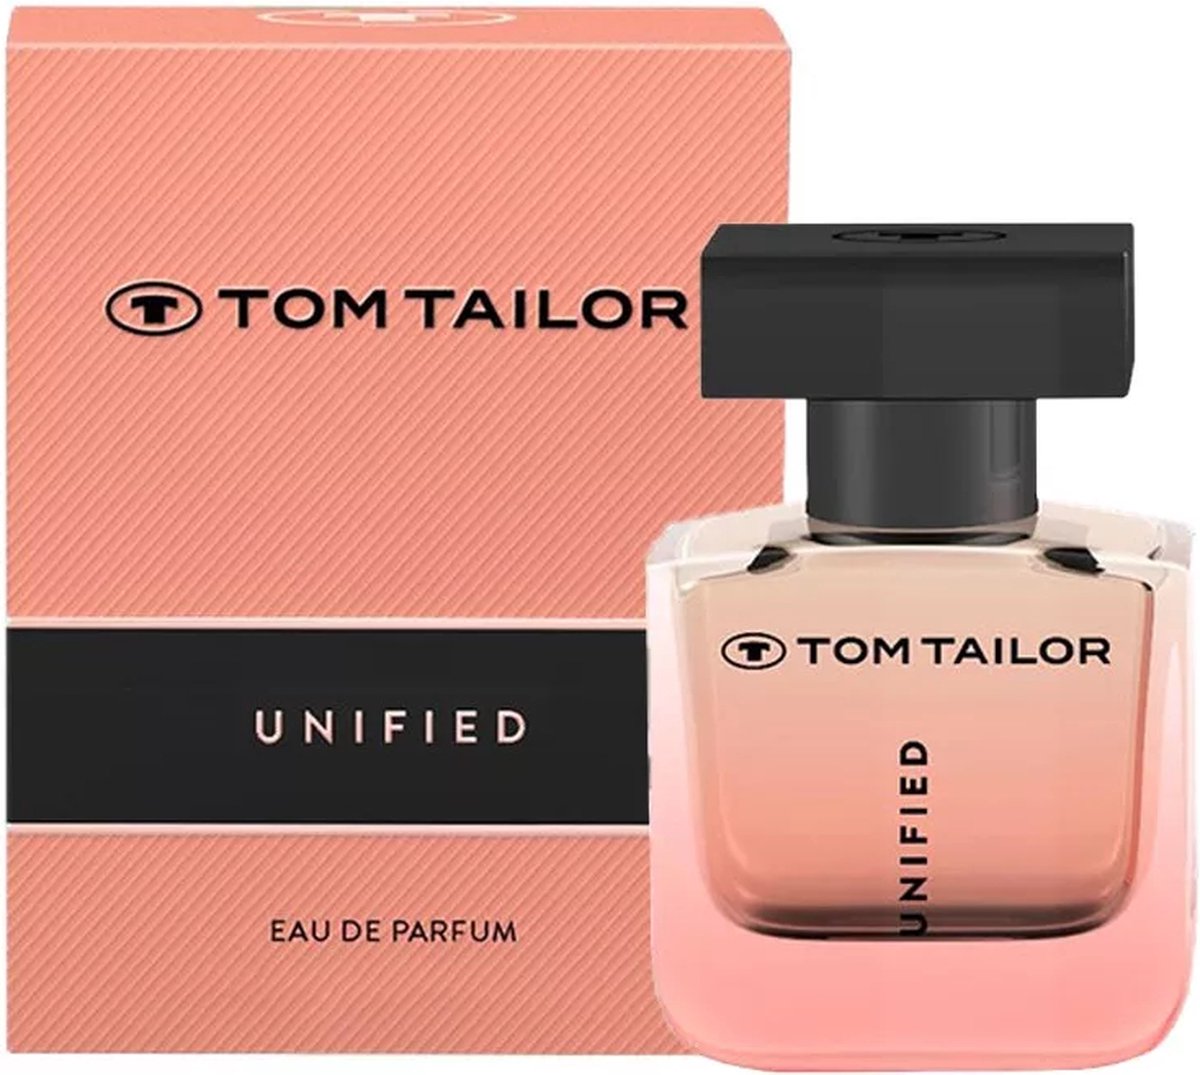 Tom Tailor Unified Eau de Parfum 50ml | bol